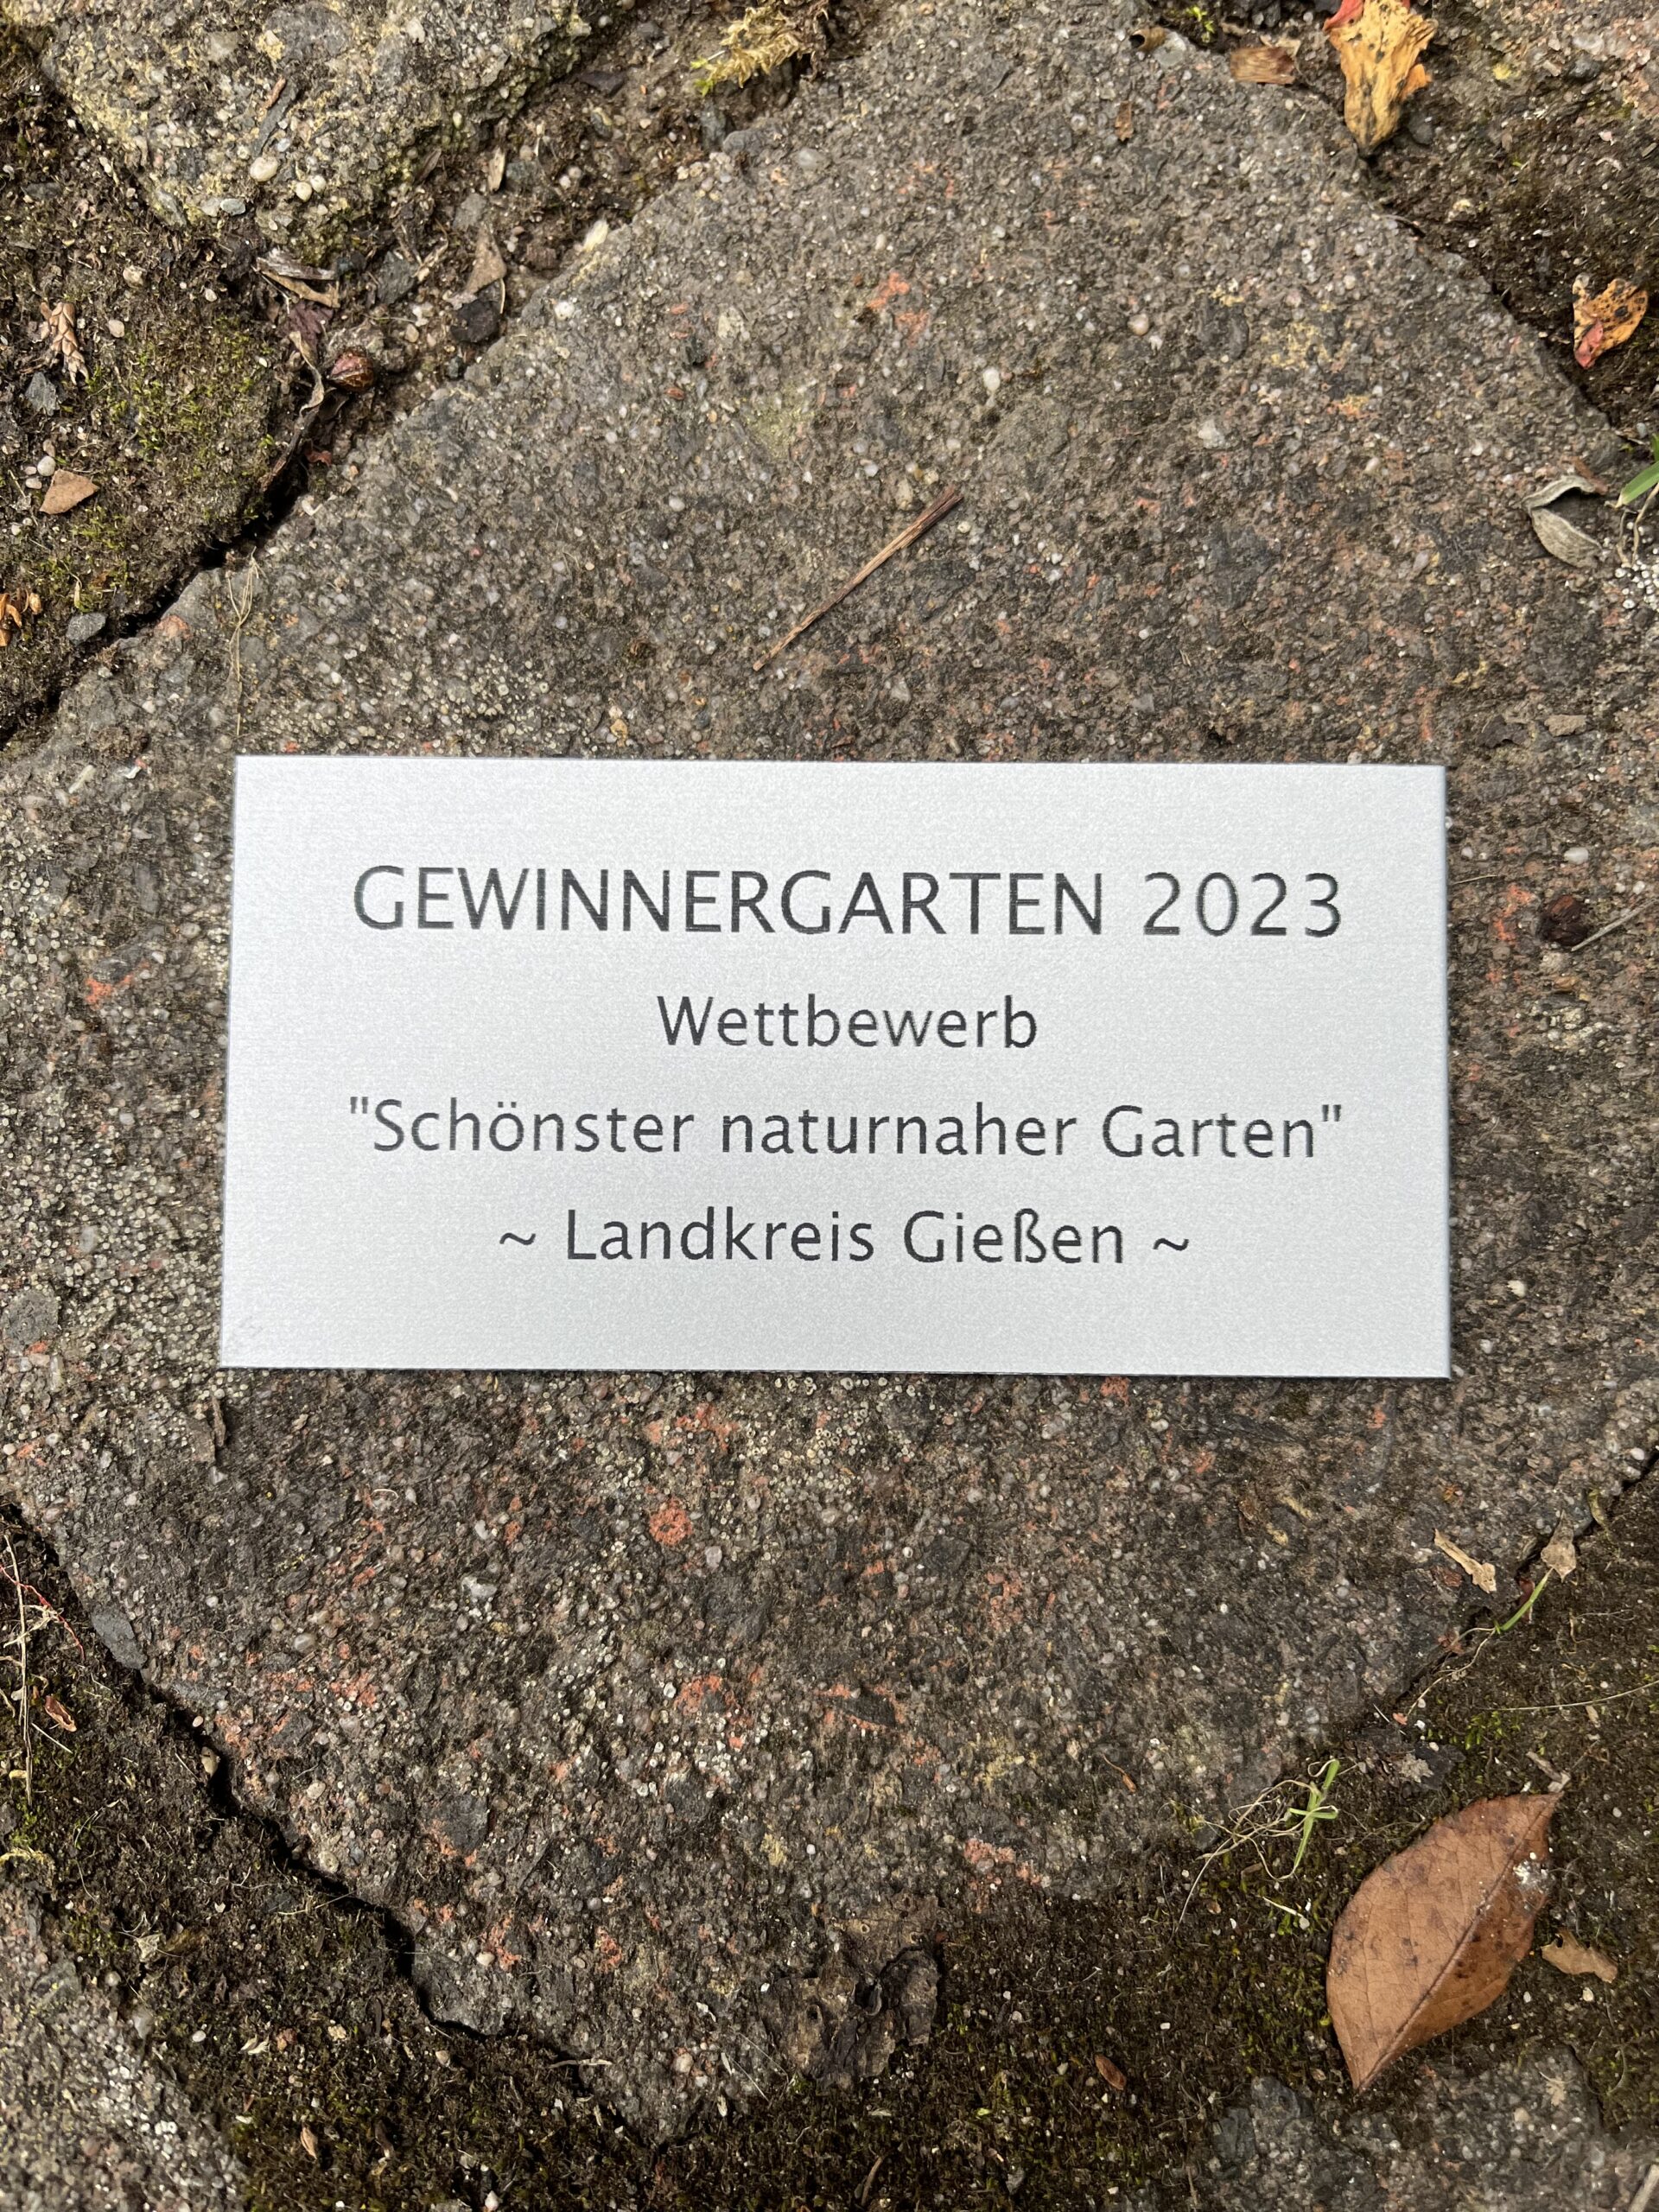 Die Ausgezeichneten bekamen eine kleine Plakette, die beispielsweise am Zaun angebracht werden kann. (Foto: Landkreis Gießen)